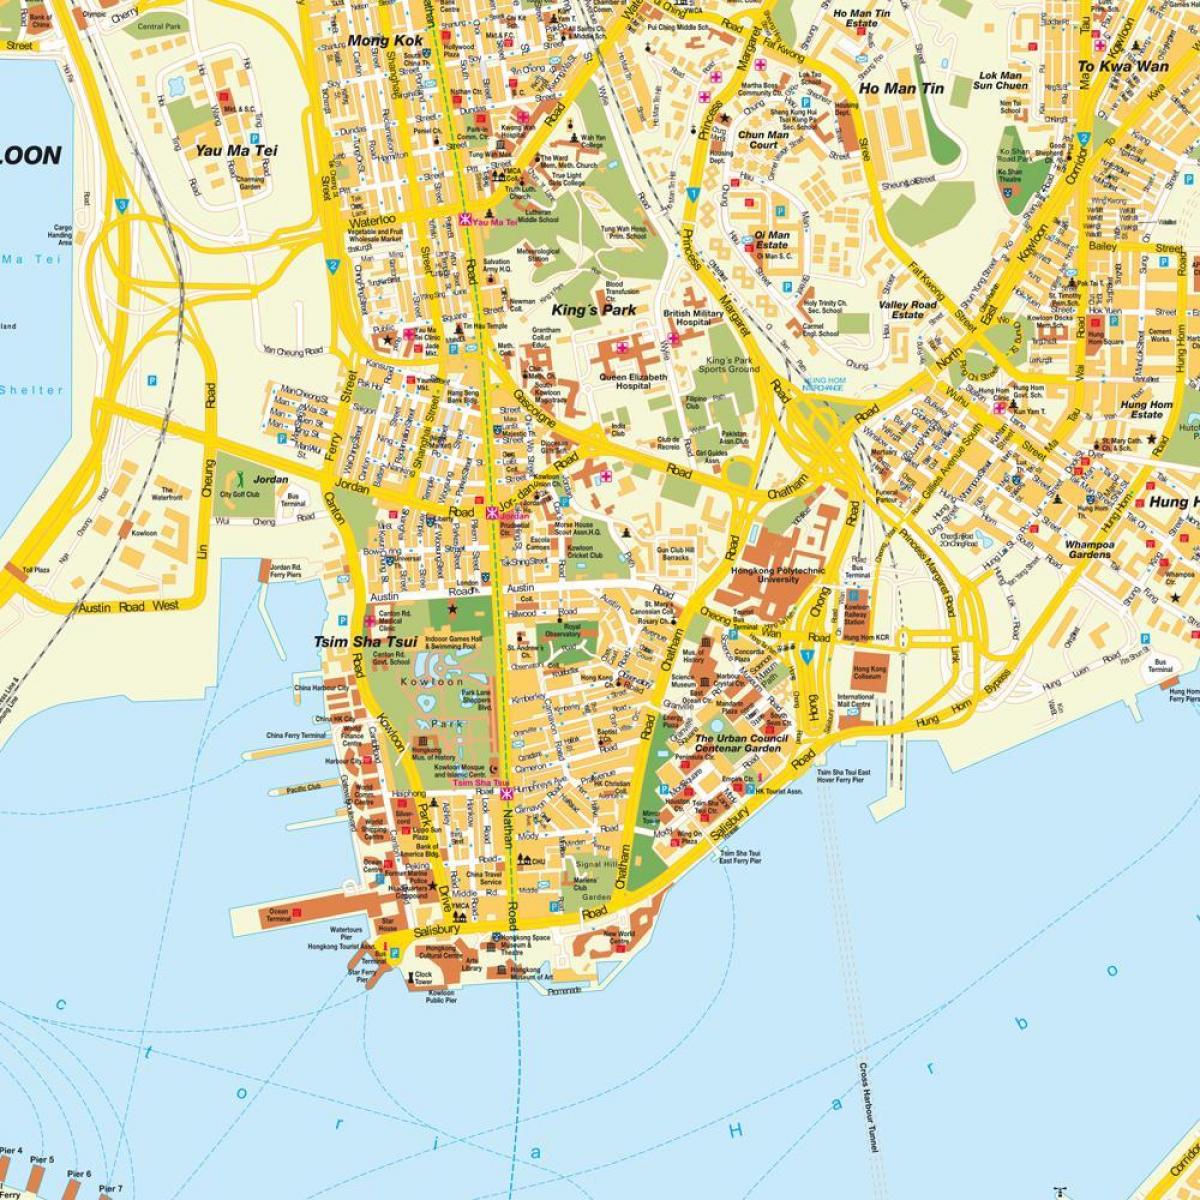 ہانگ کانگ شہر کا نقشہ